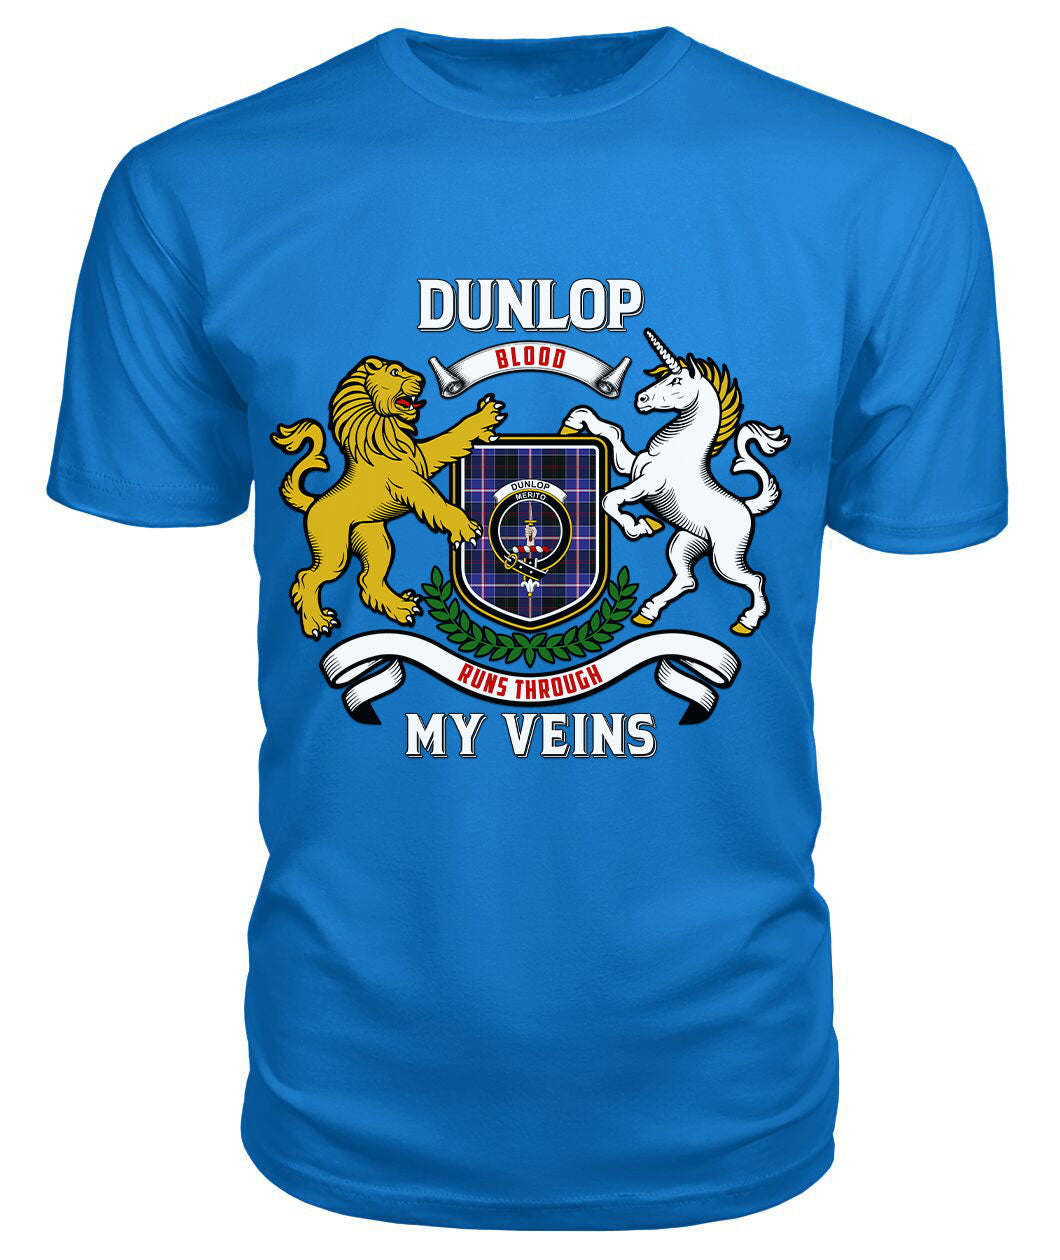 Dunlop Modern Tartan Crest 2D T-shirt - Blood Runs Through My Veins Style